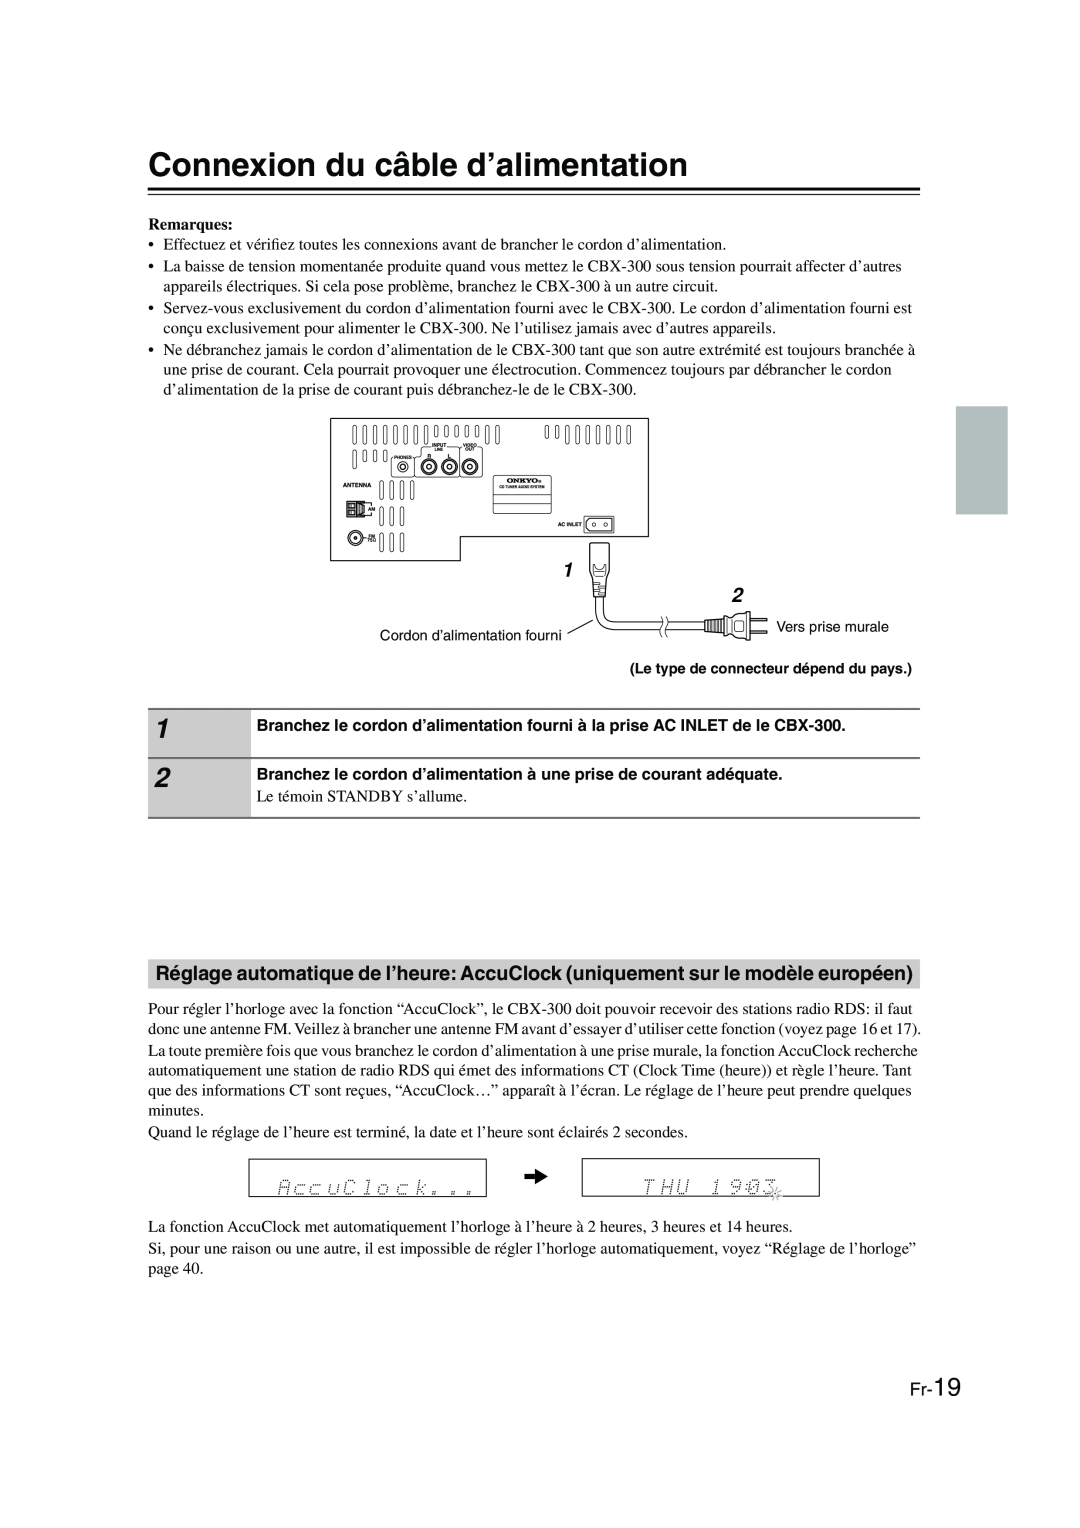 Onkyo CBX-300 instruction manual Connexion du câble d’alimentation, Fr-19, Remarques 